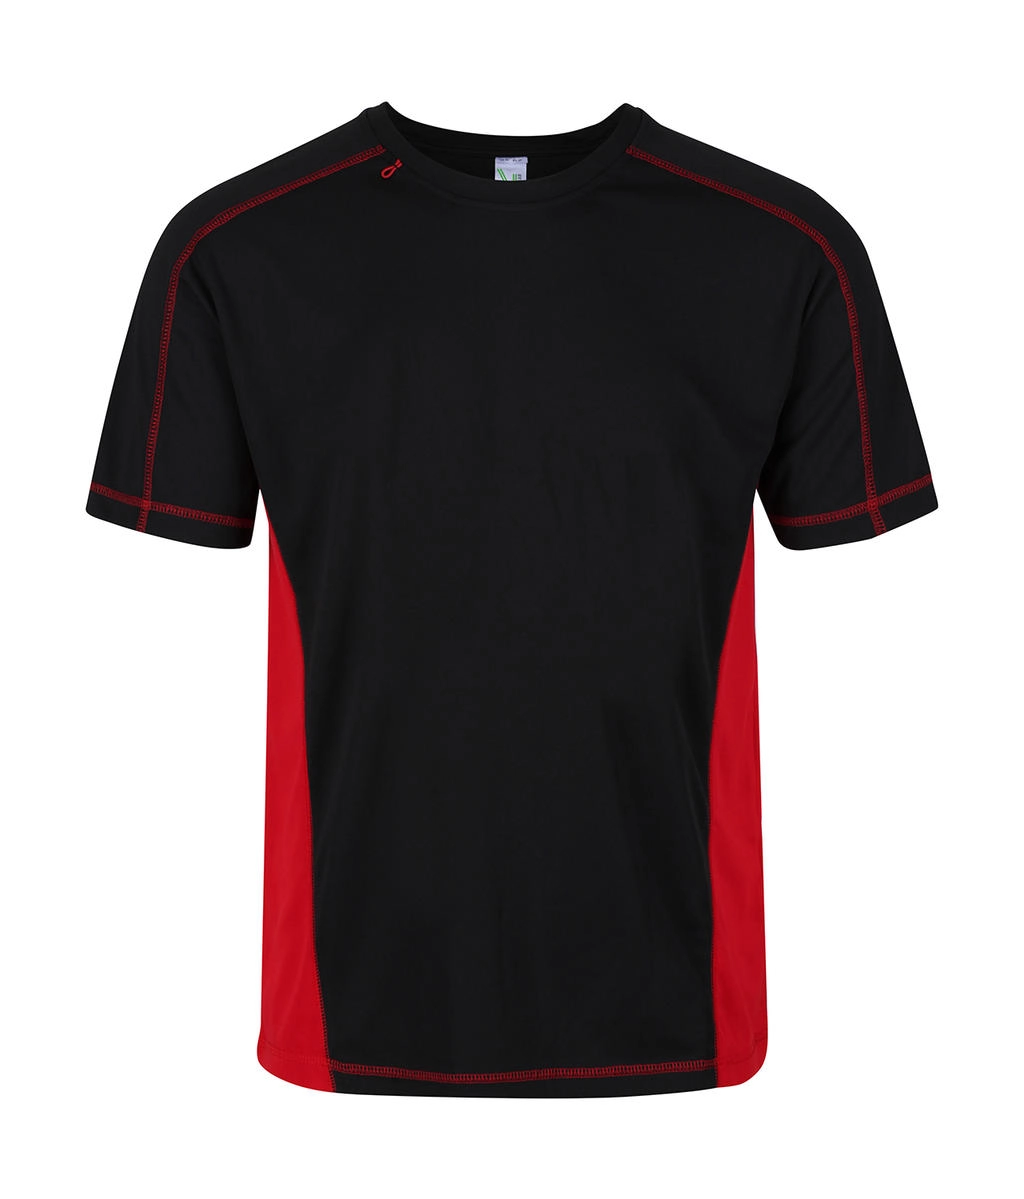 Beijing T-Shirt zum Besticken und Bedrucken in der Farbe Black/Classic Red mit Ihren Logo, Schriftzug oder Motiv.